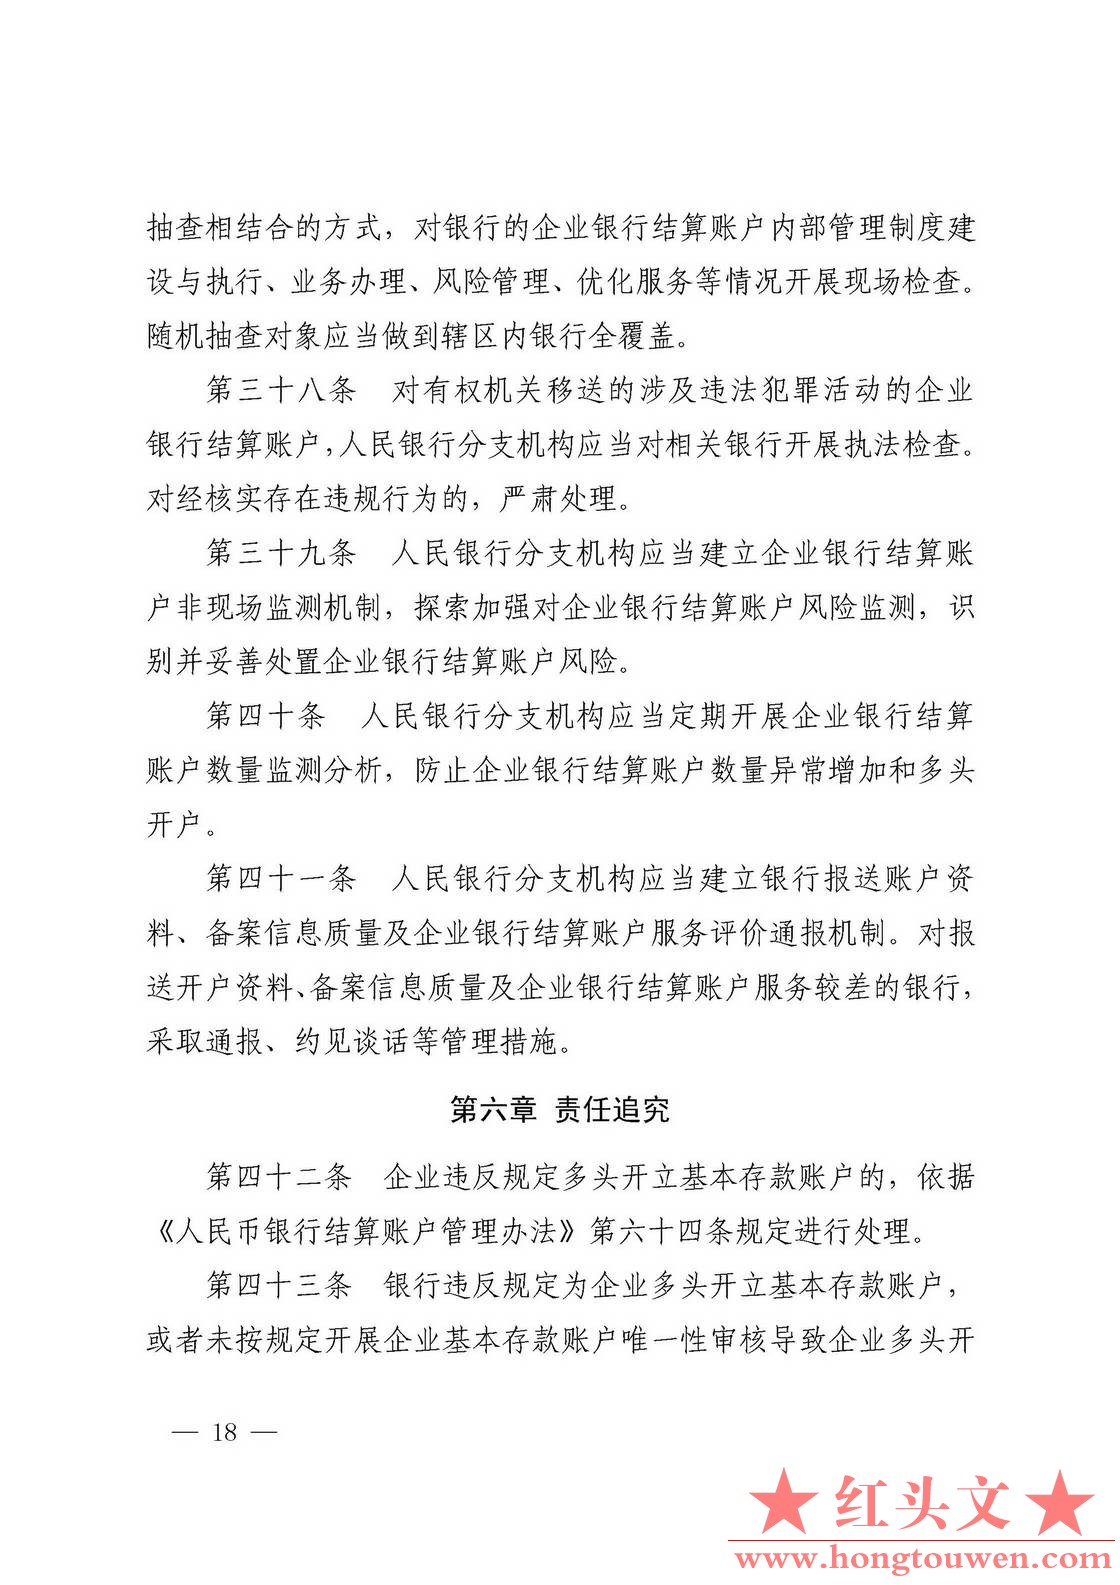 银发[2019]41号-中国人民银行关于取消企业银行账户许可的通知_页面_18.jpg.jpg